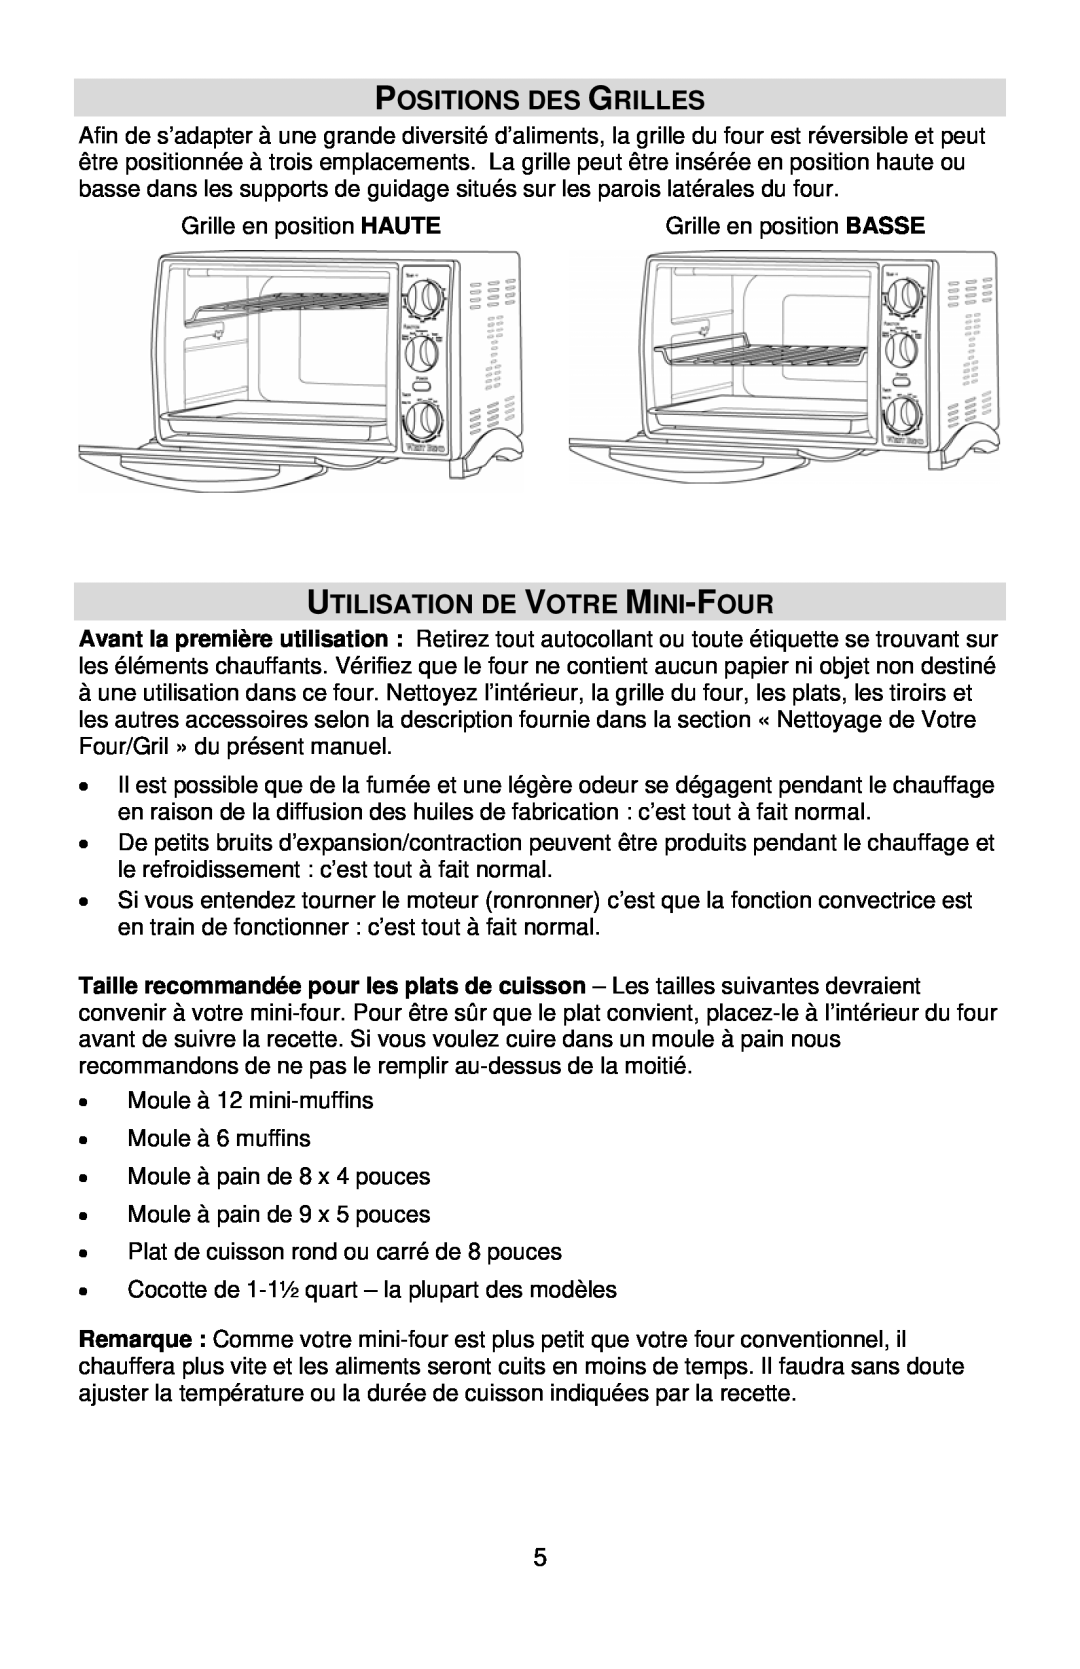 West Bend L5658B instruction manual Positions Des Grilles, Utilisation De Votre Mini-Four 